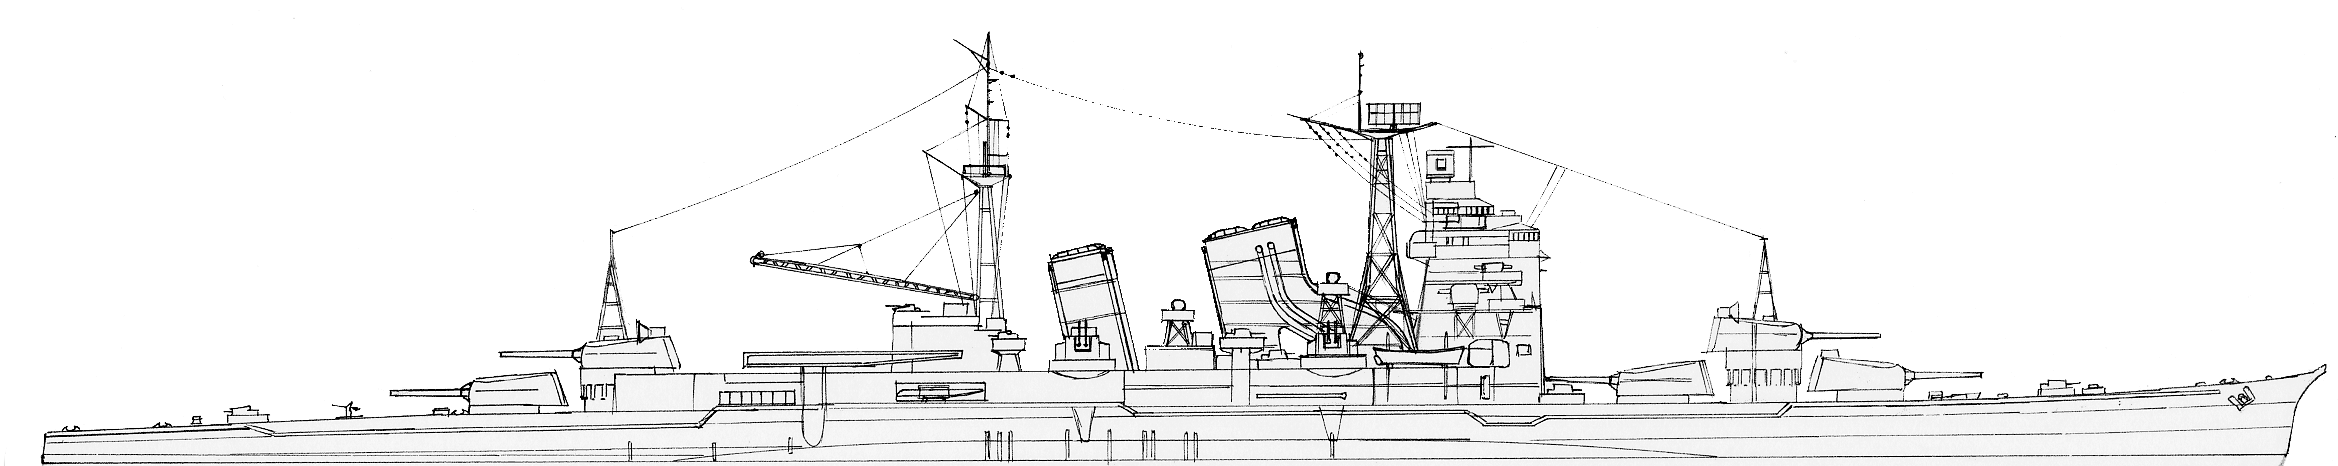 Myoko 1944 - author's schematics